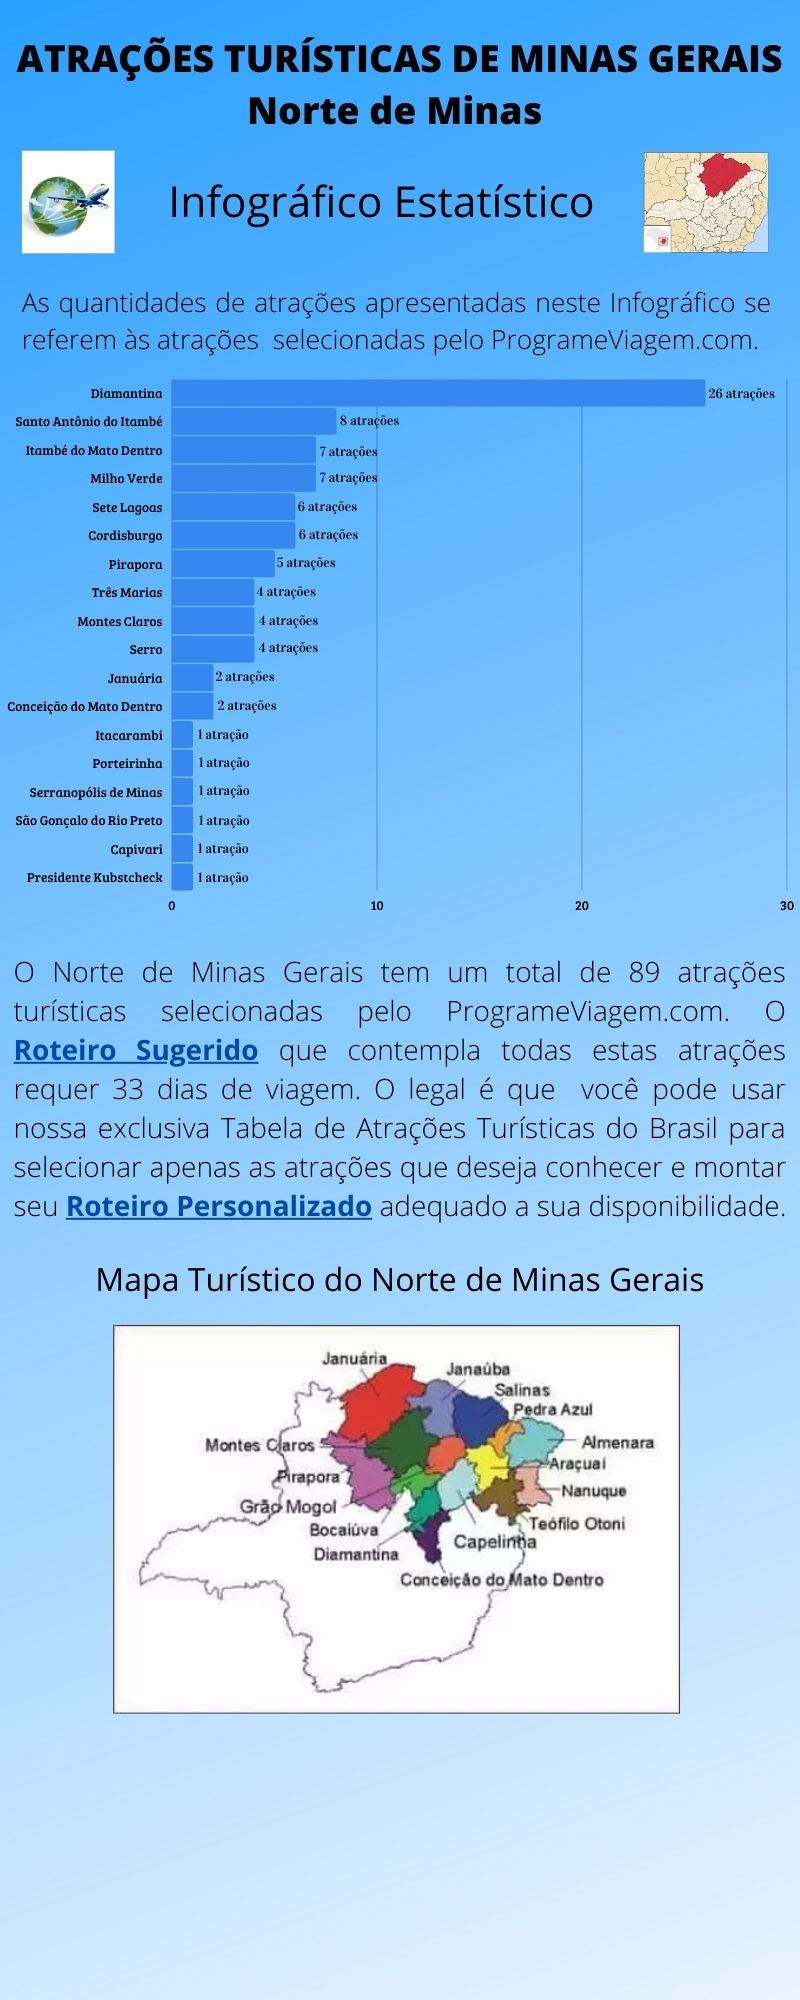 Infográfico Atrações Turísticas de Minas Gerais (Norte de Minas)